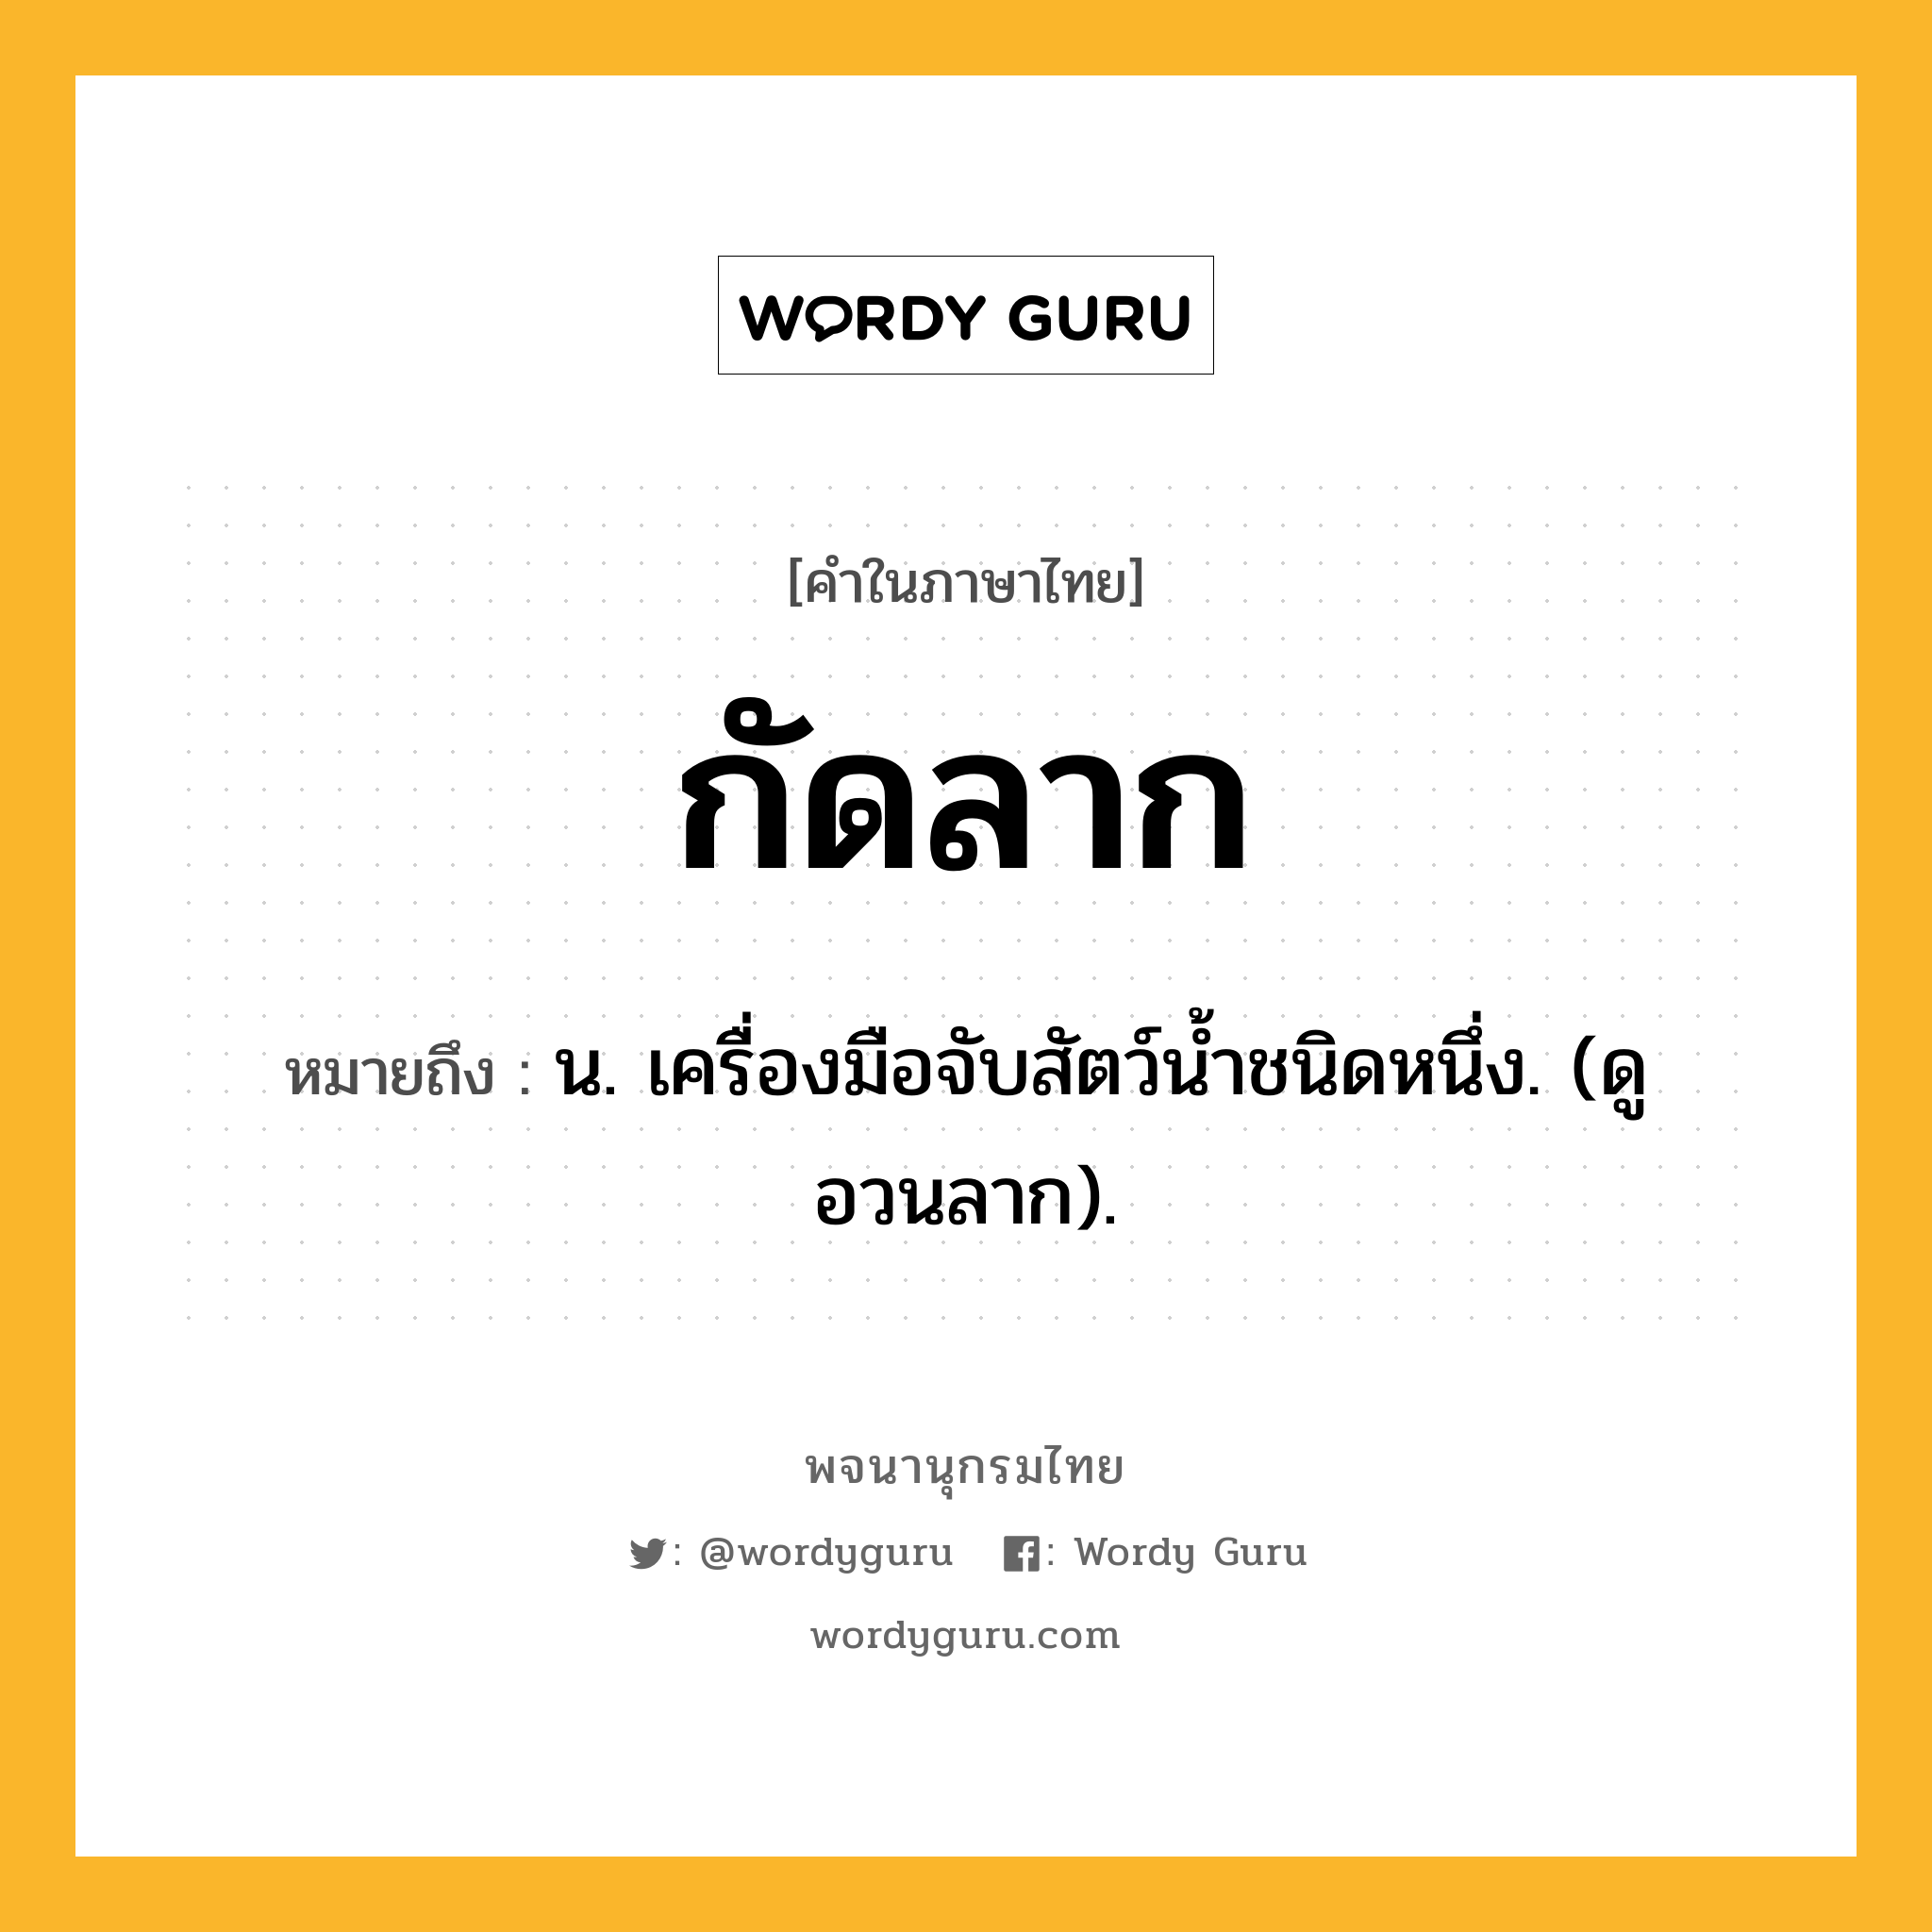 กัดลาก ความหมาย หมายถึงอะไร?, คำในภาษาไทย กัดลาก หมายถึง น. เครื่องมือจับสัตว์นํ้าชนิดหนึ่ง. (ดู อวนลาก).